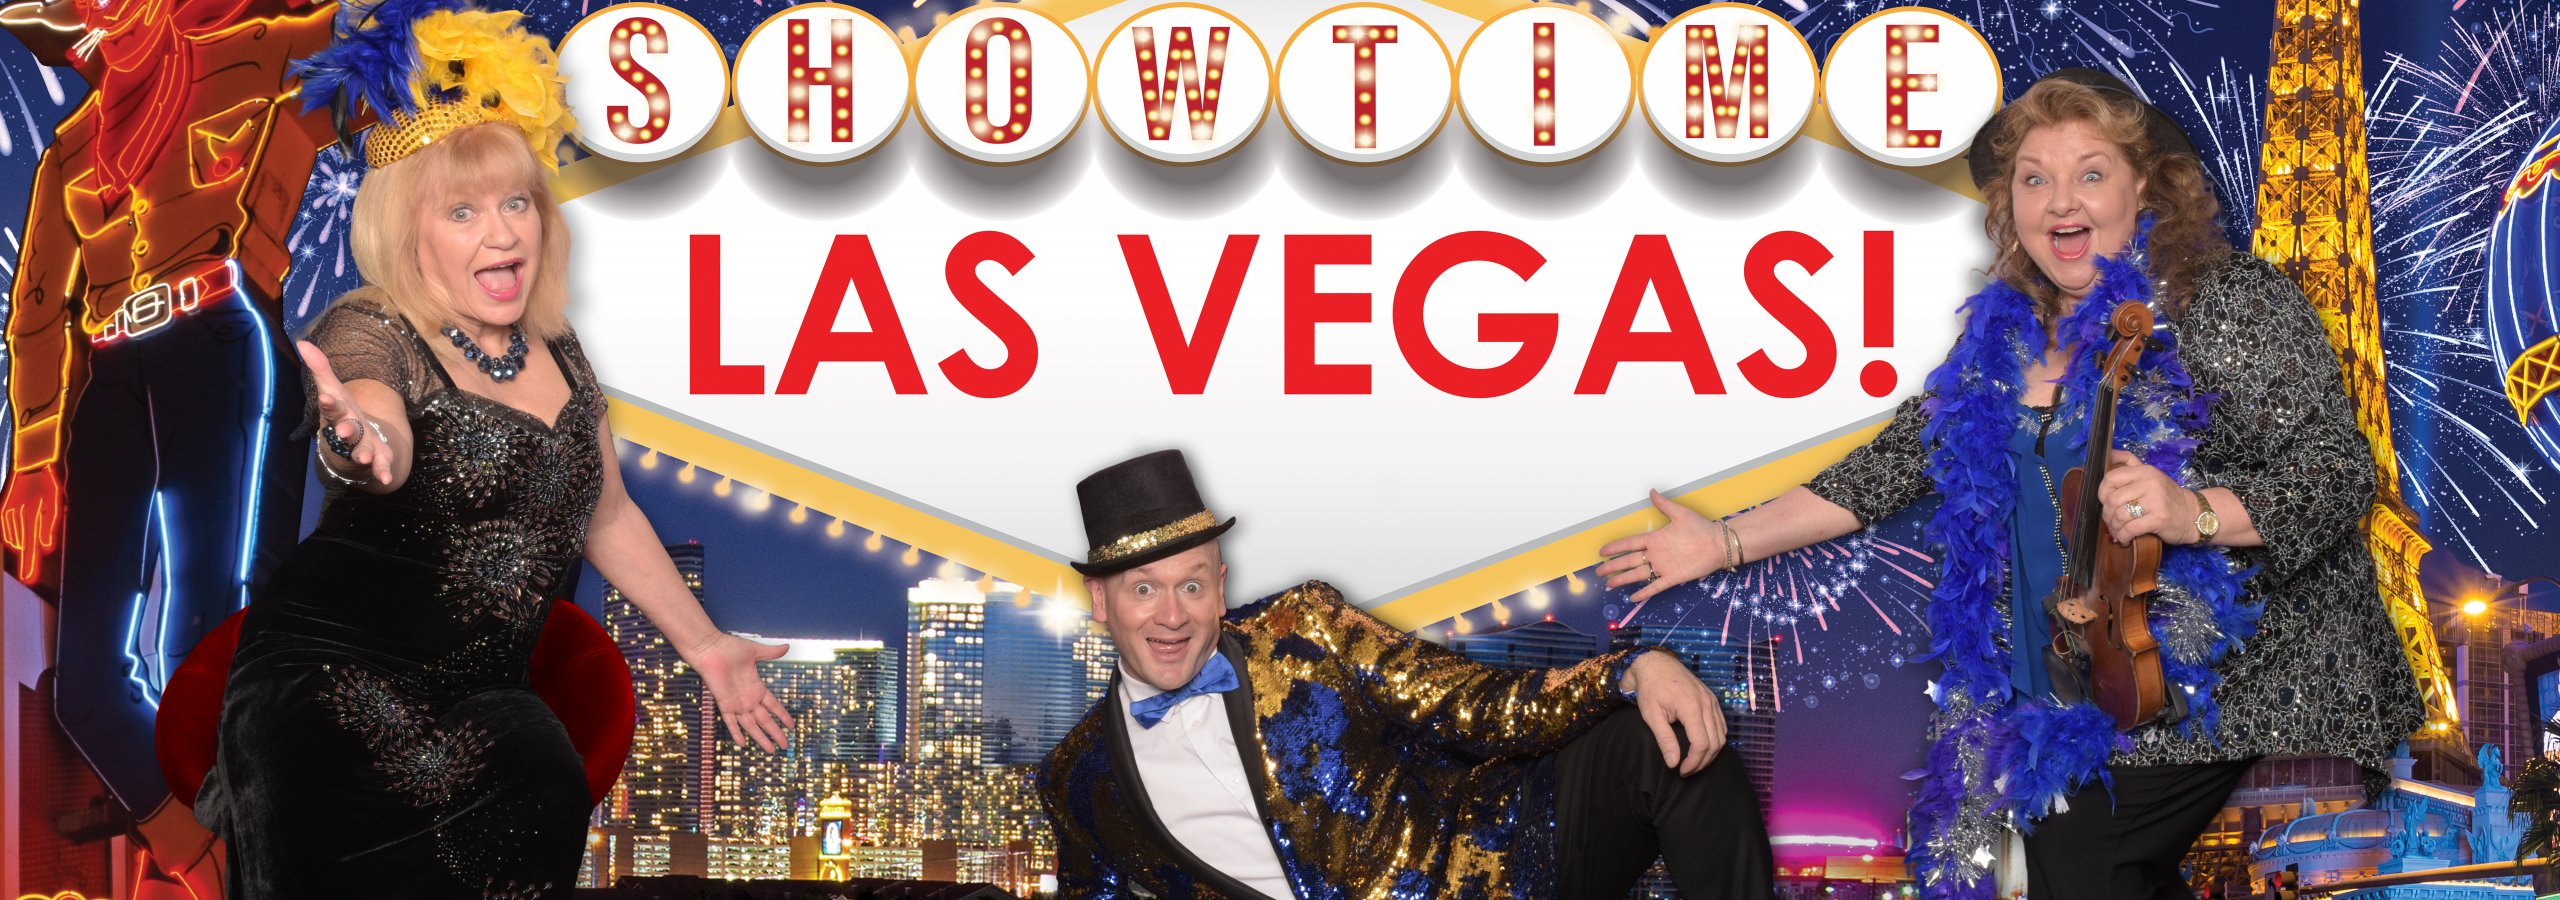 Showtime Las Vegas!